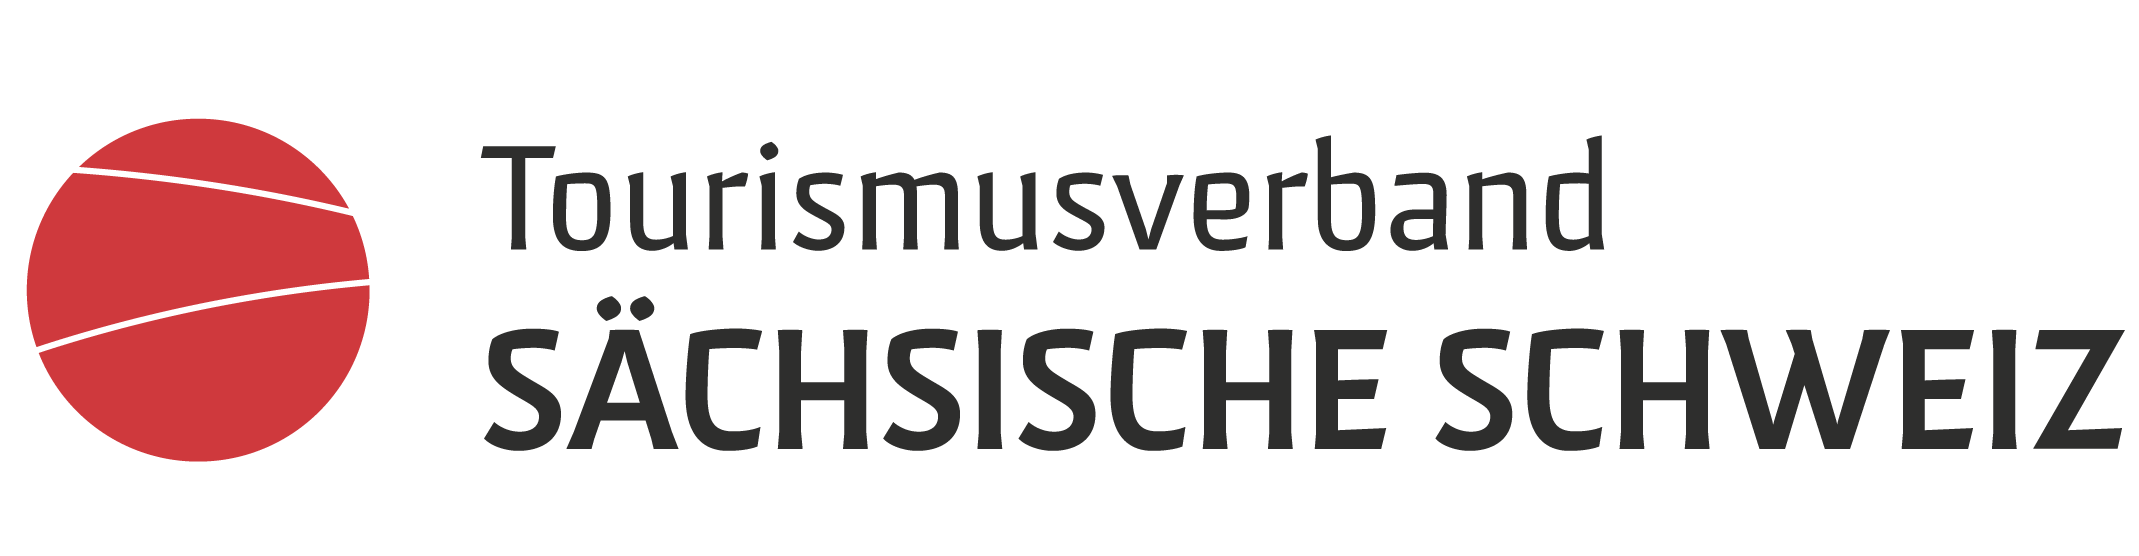 Tourismusverband Sächsische Schweiz - Kooperationspartner der Felsenbühnen Festspiele